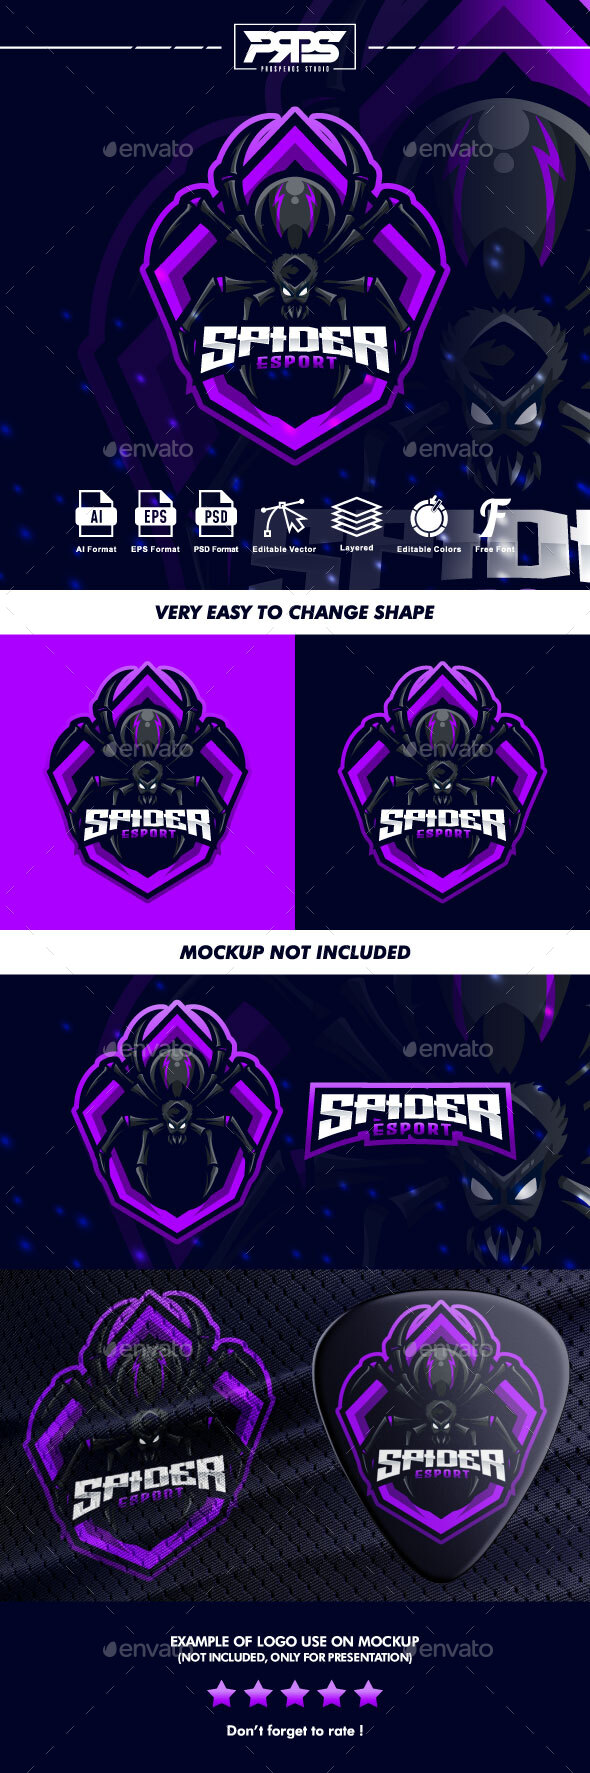 [DOWNLOAD]Spider Esport Logo